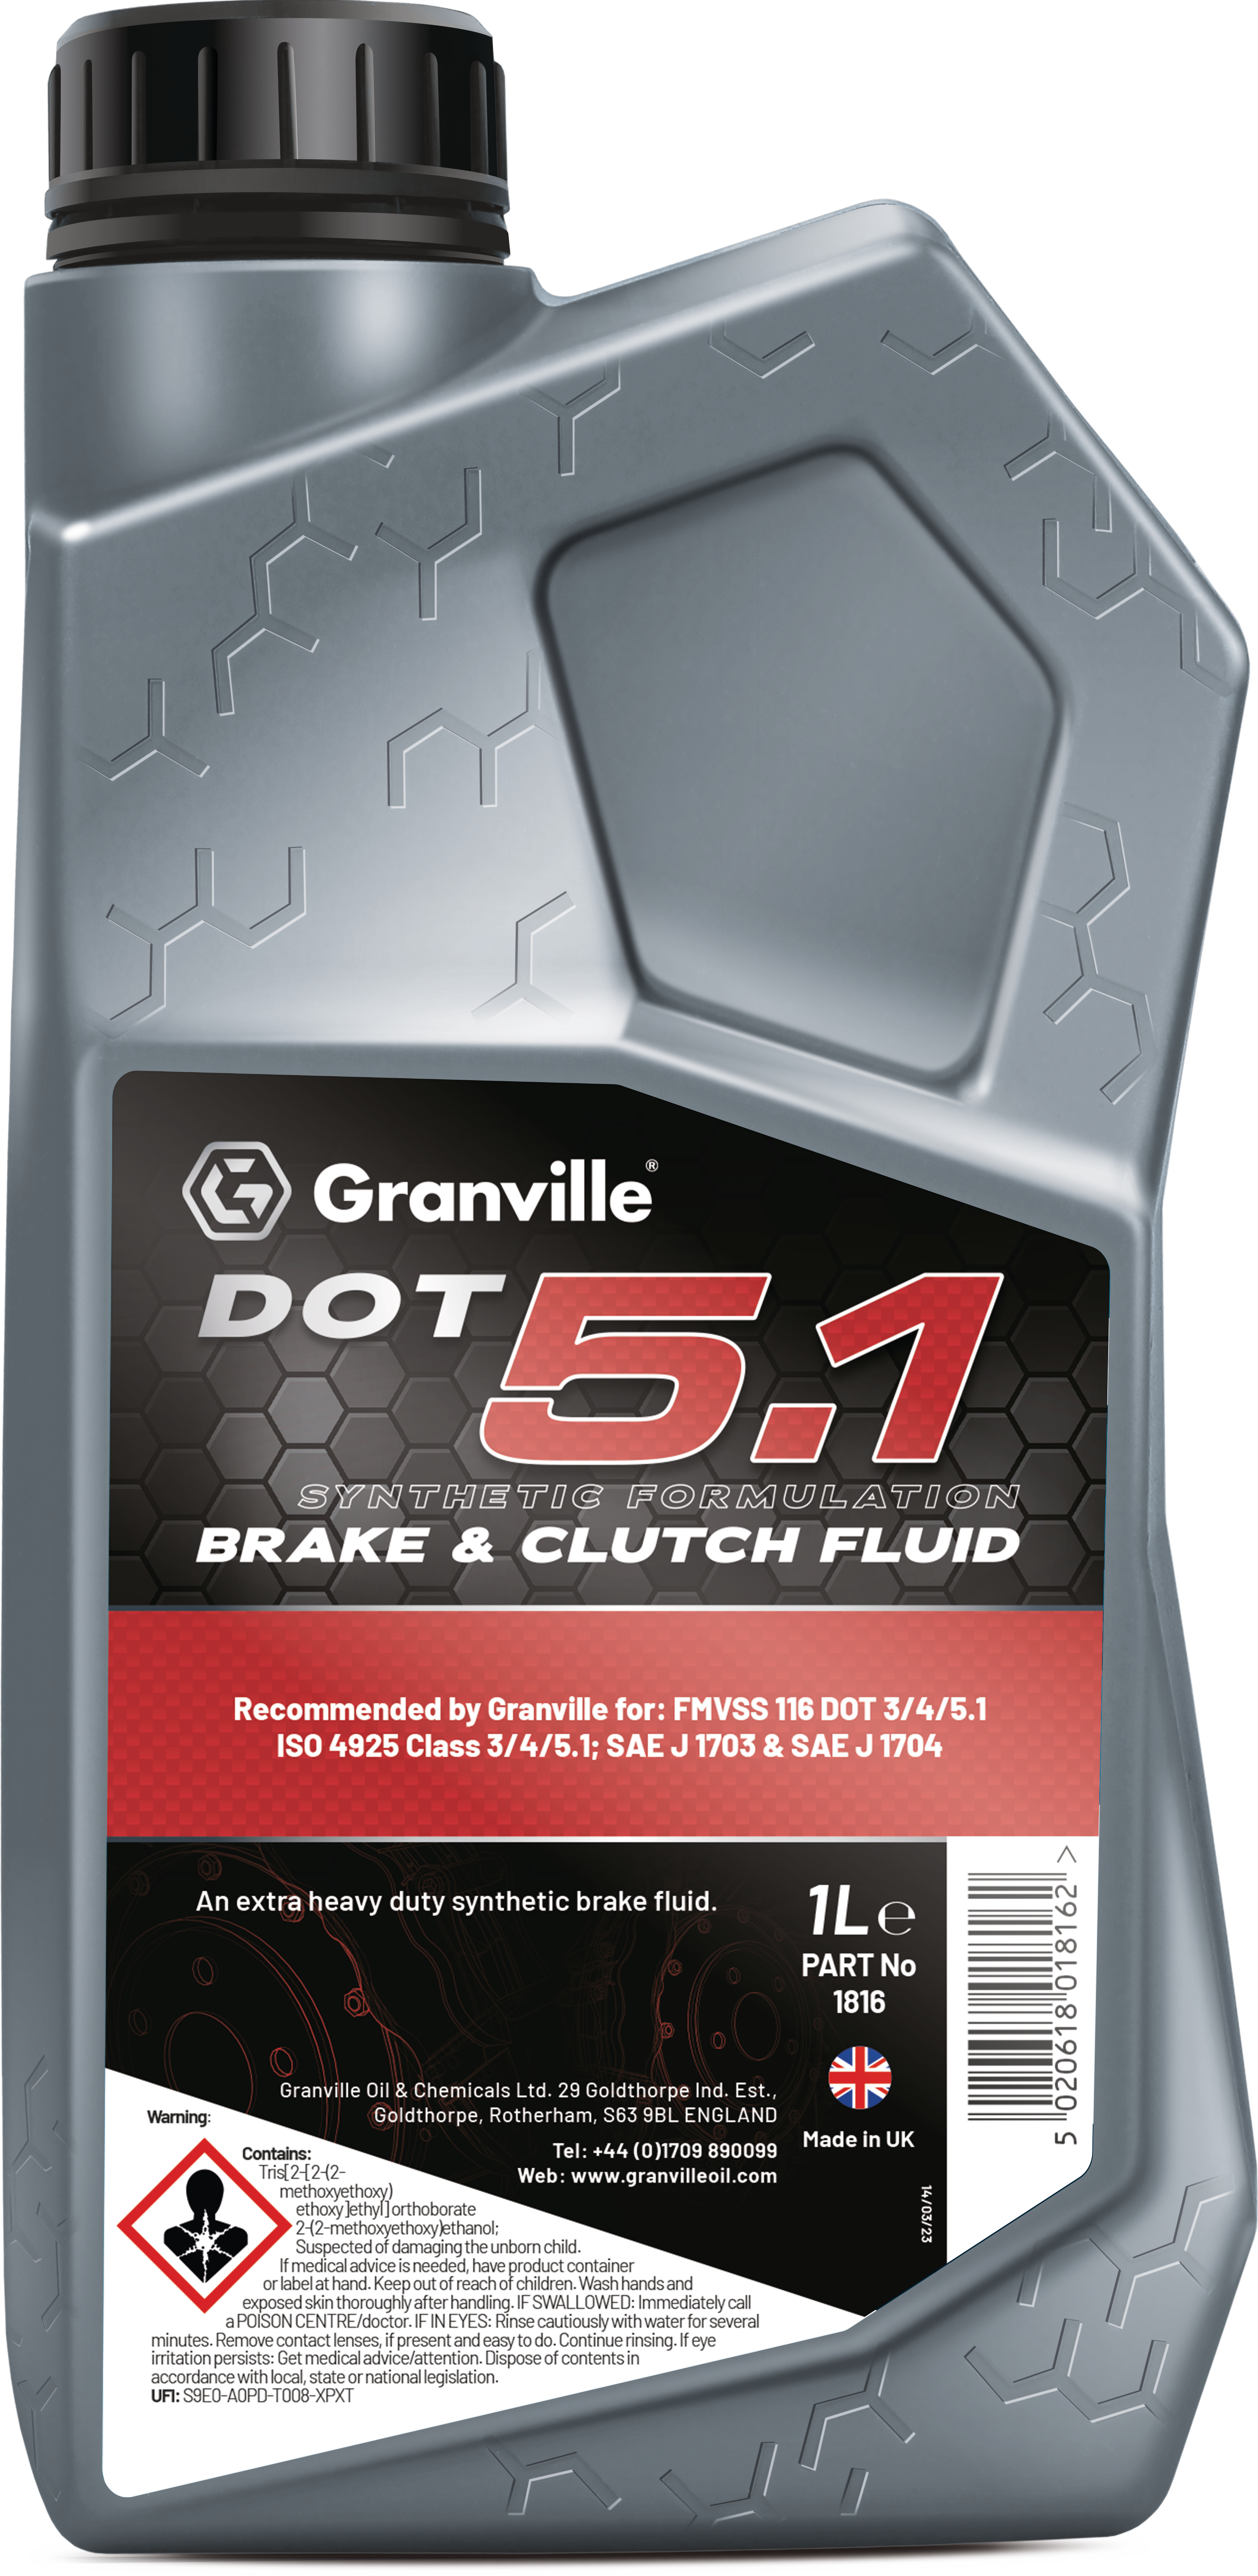 Granville | Product Information - Granville Brake Fluid Dot 5.1